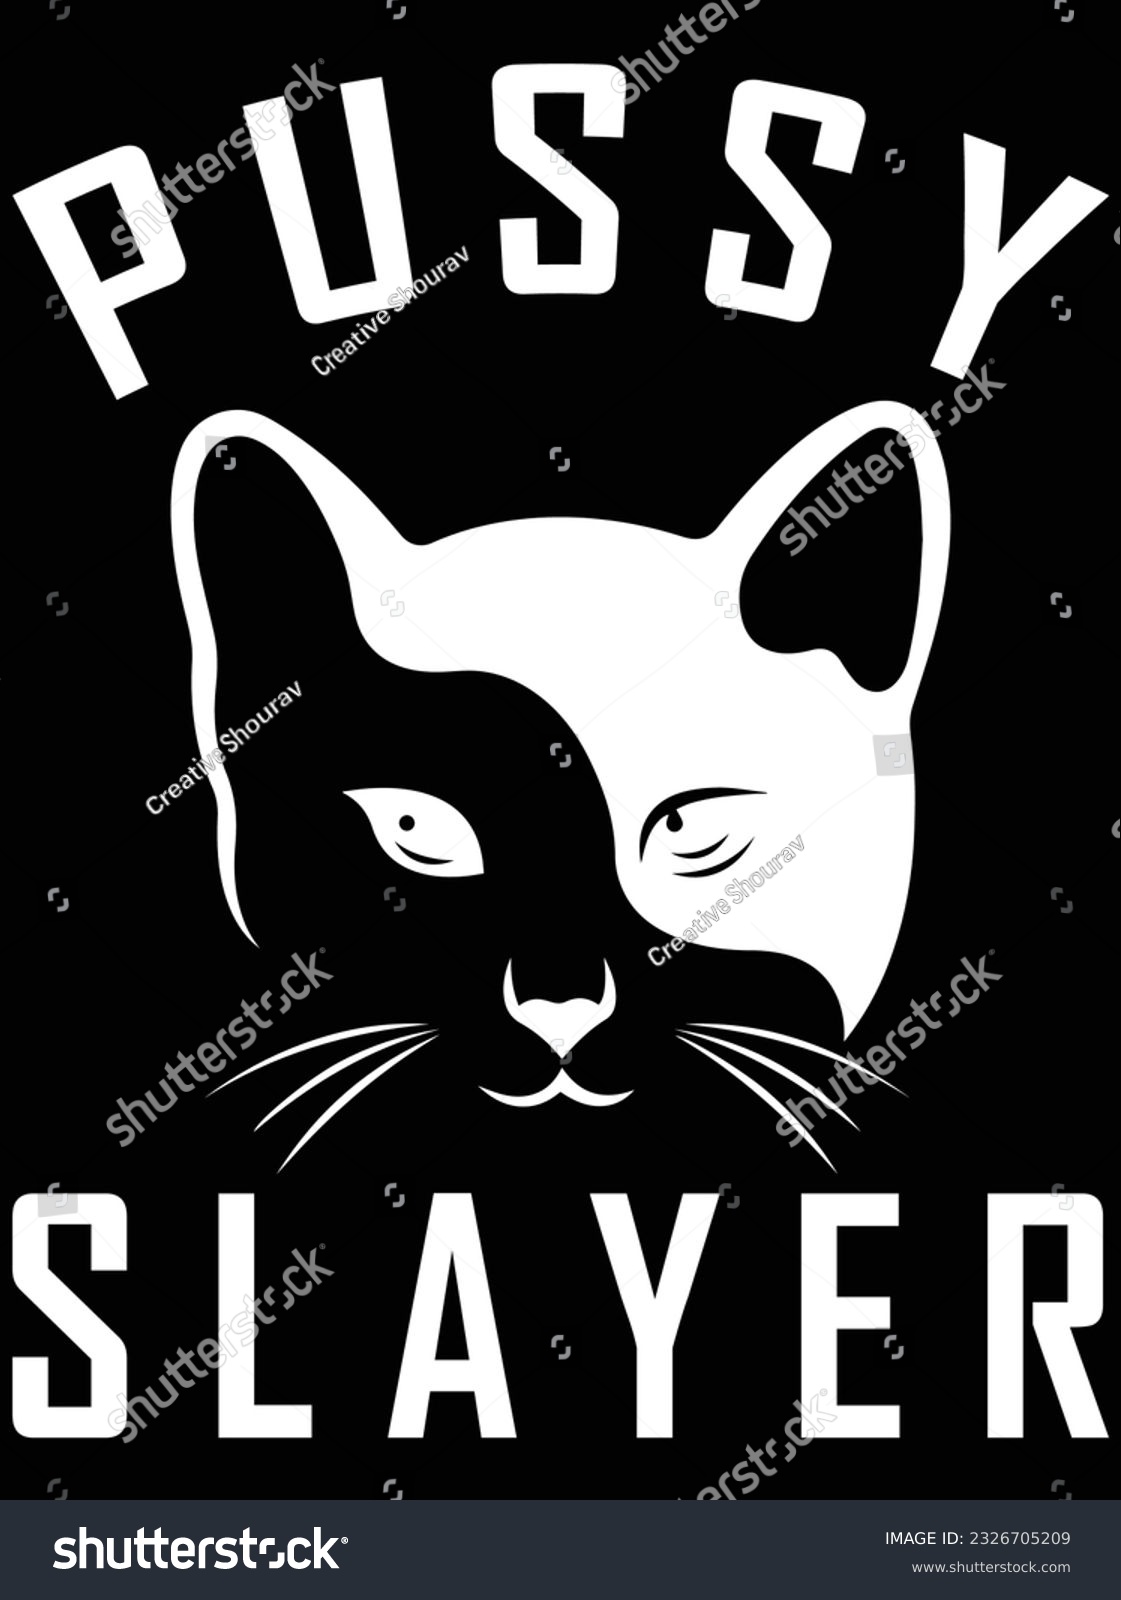 SVG of Pussy slayer vector art design, eps file. design file for t-shirt. SVG, EPS cuttable design file svg